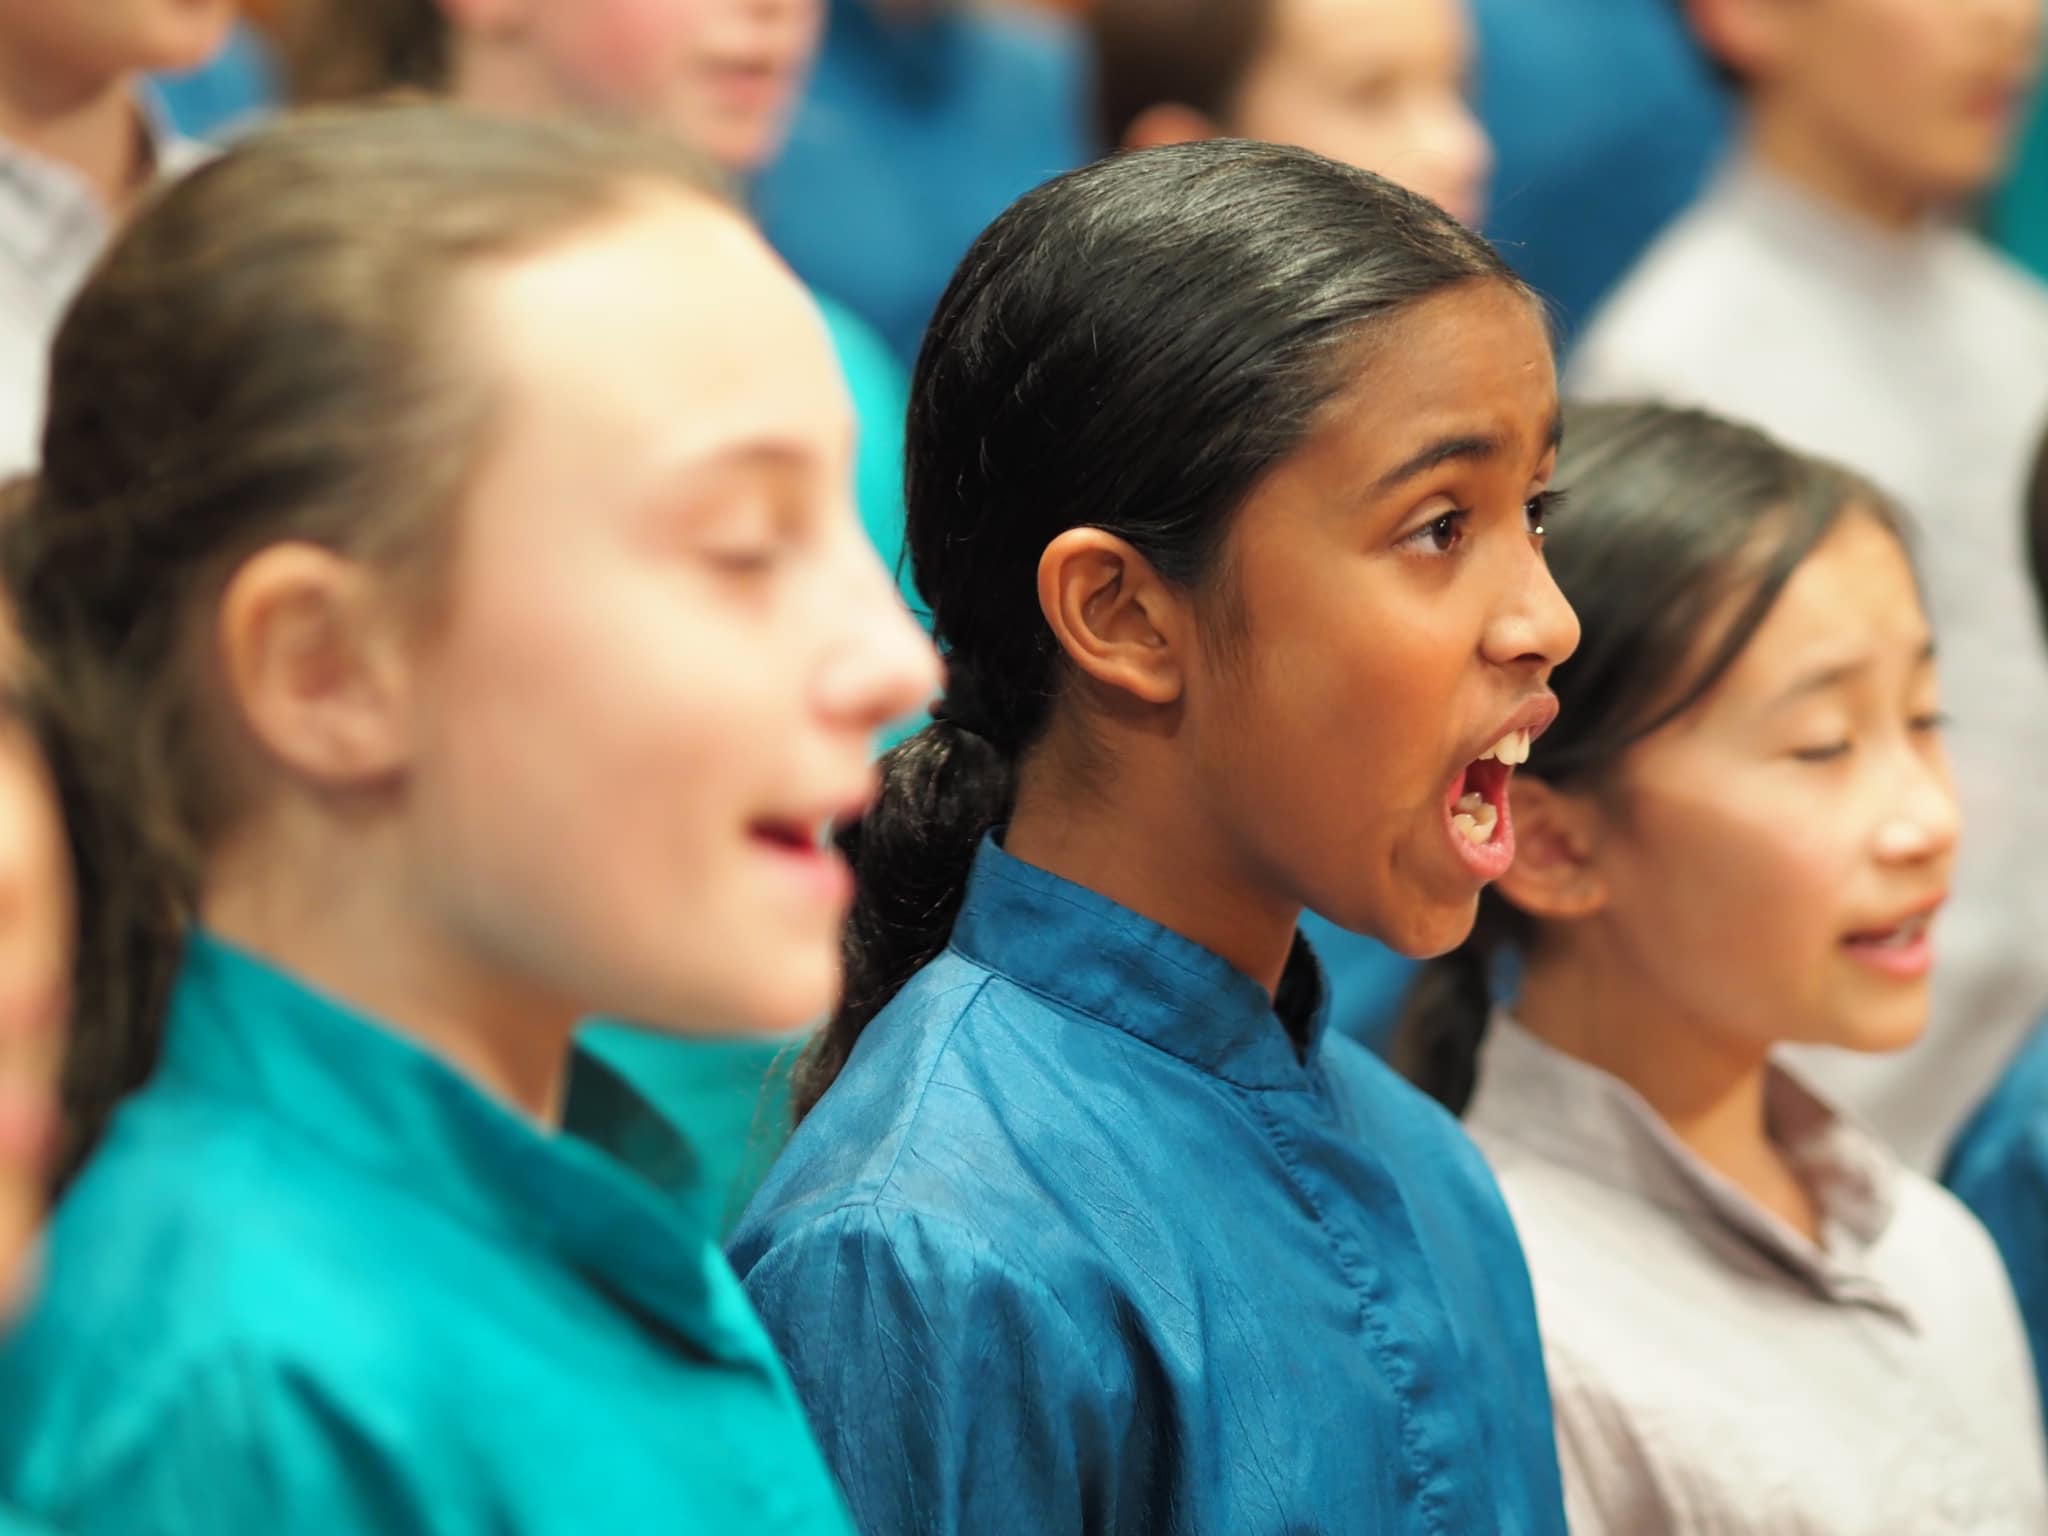 Sydney Children’s Choir in Parramatta